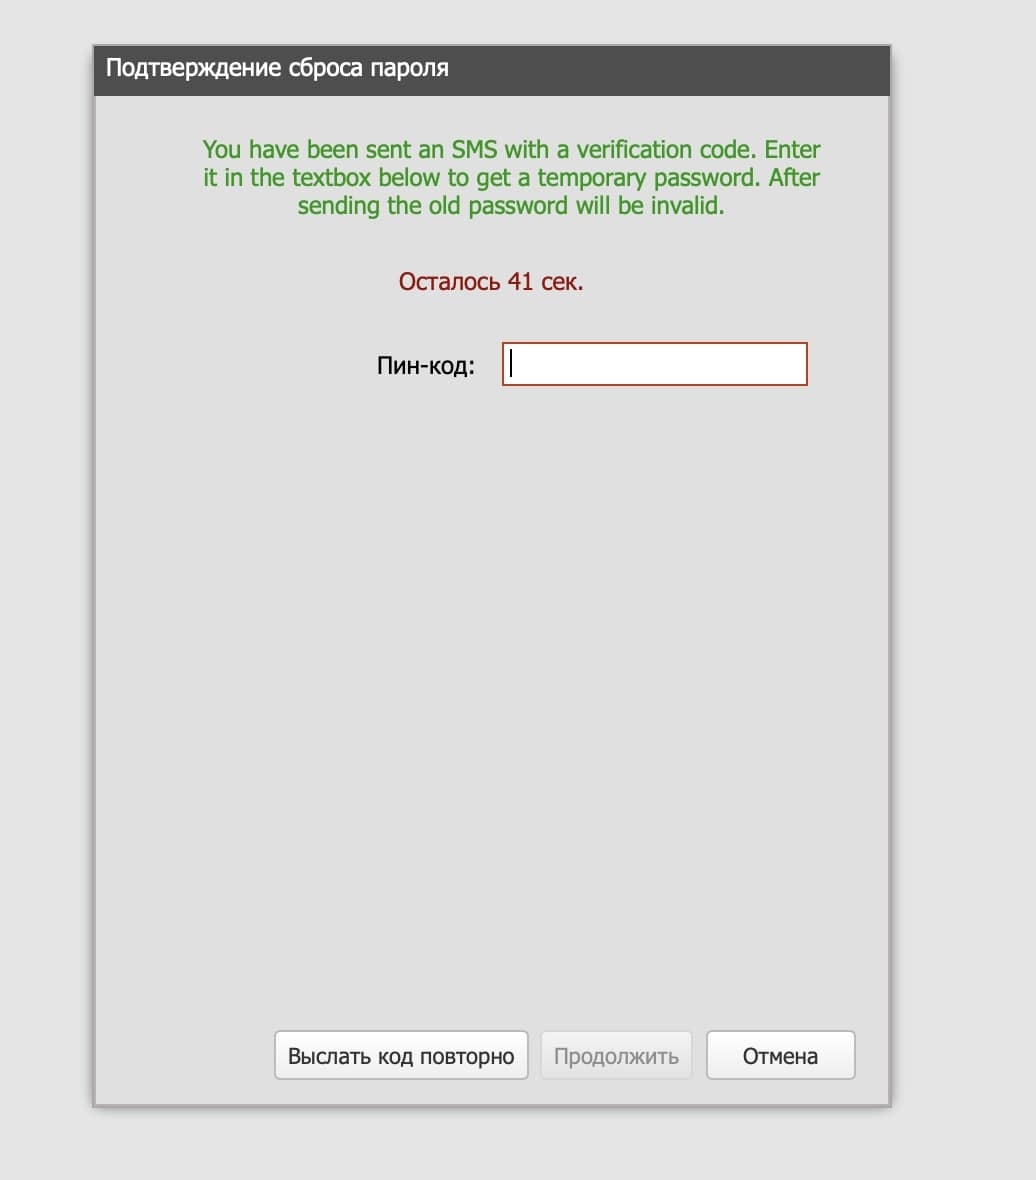 На этом скриншоте программа запрашивает пин-код, чтобы подтвердить смену пароля.